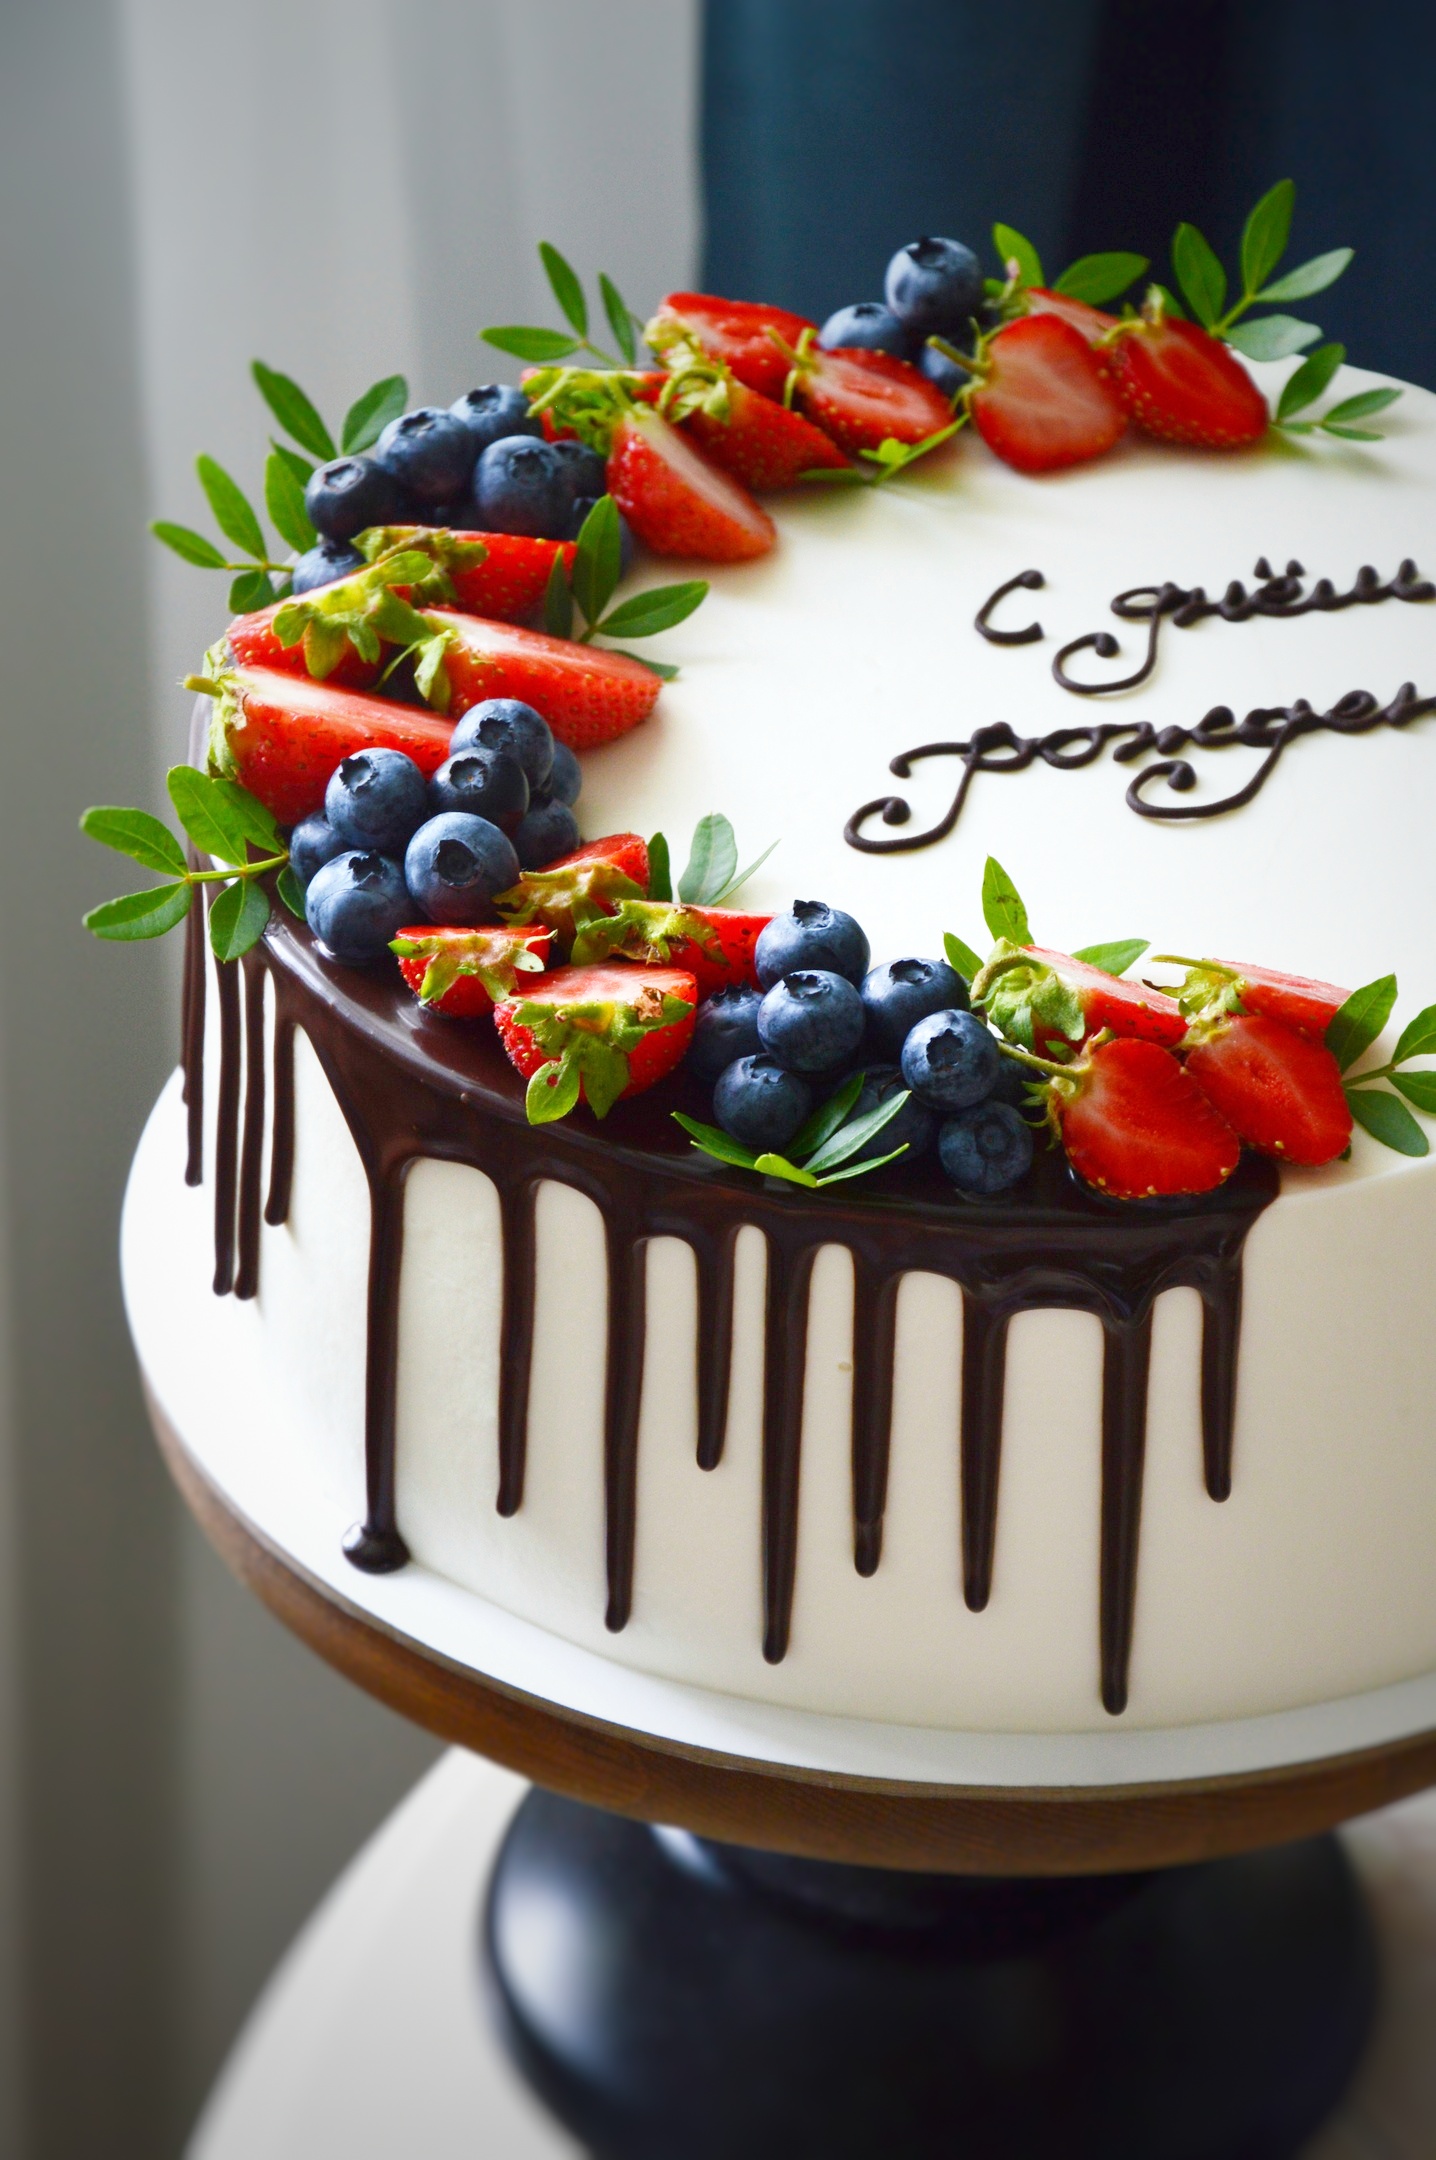 торт с днем рождения картинки